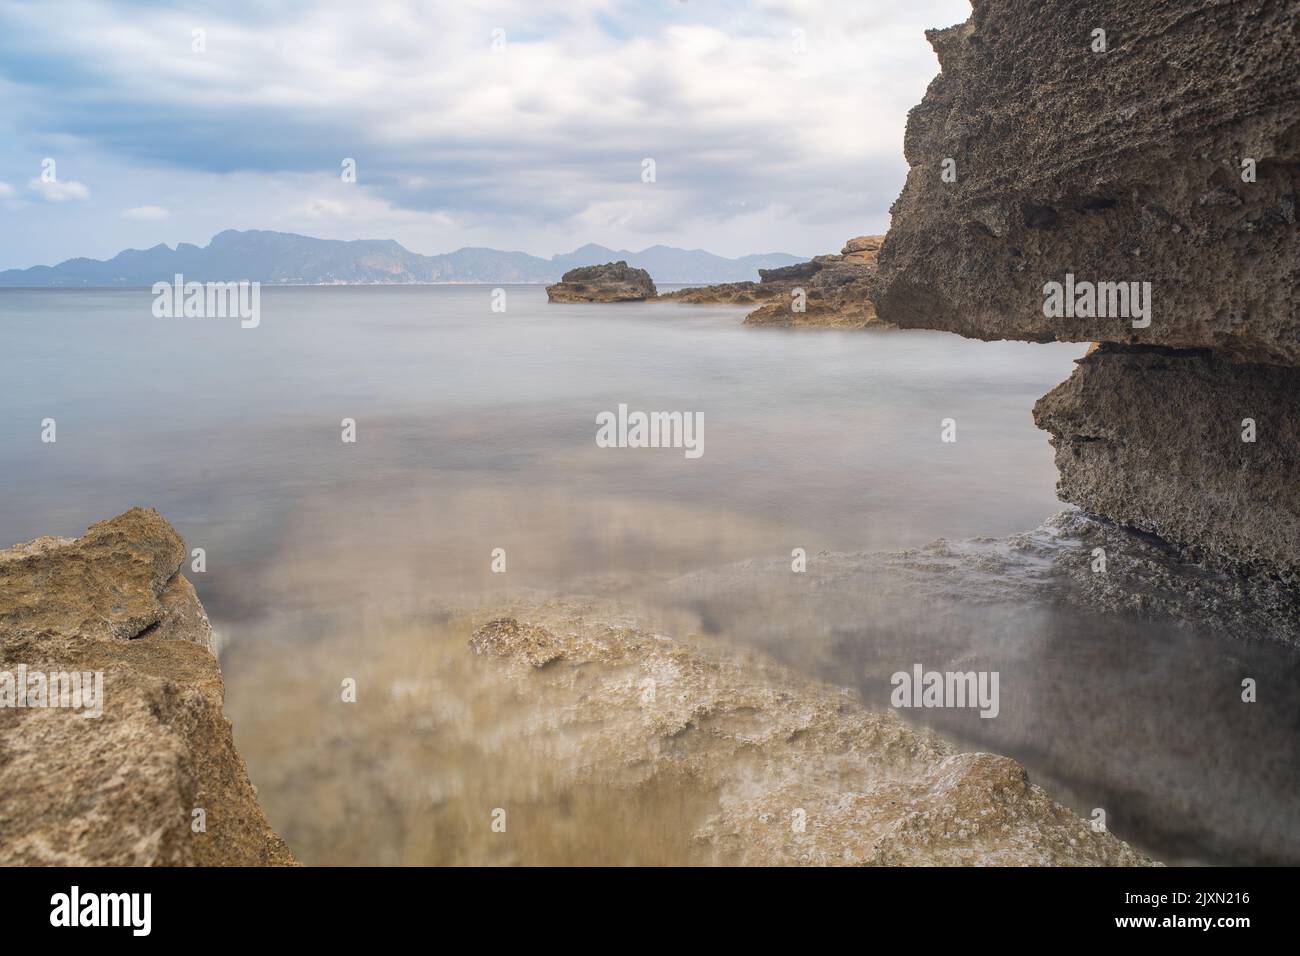 Ein schöner Blick auf das trübe Wasser des Strandes Cala Victoria, Spanien. Stockfoto